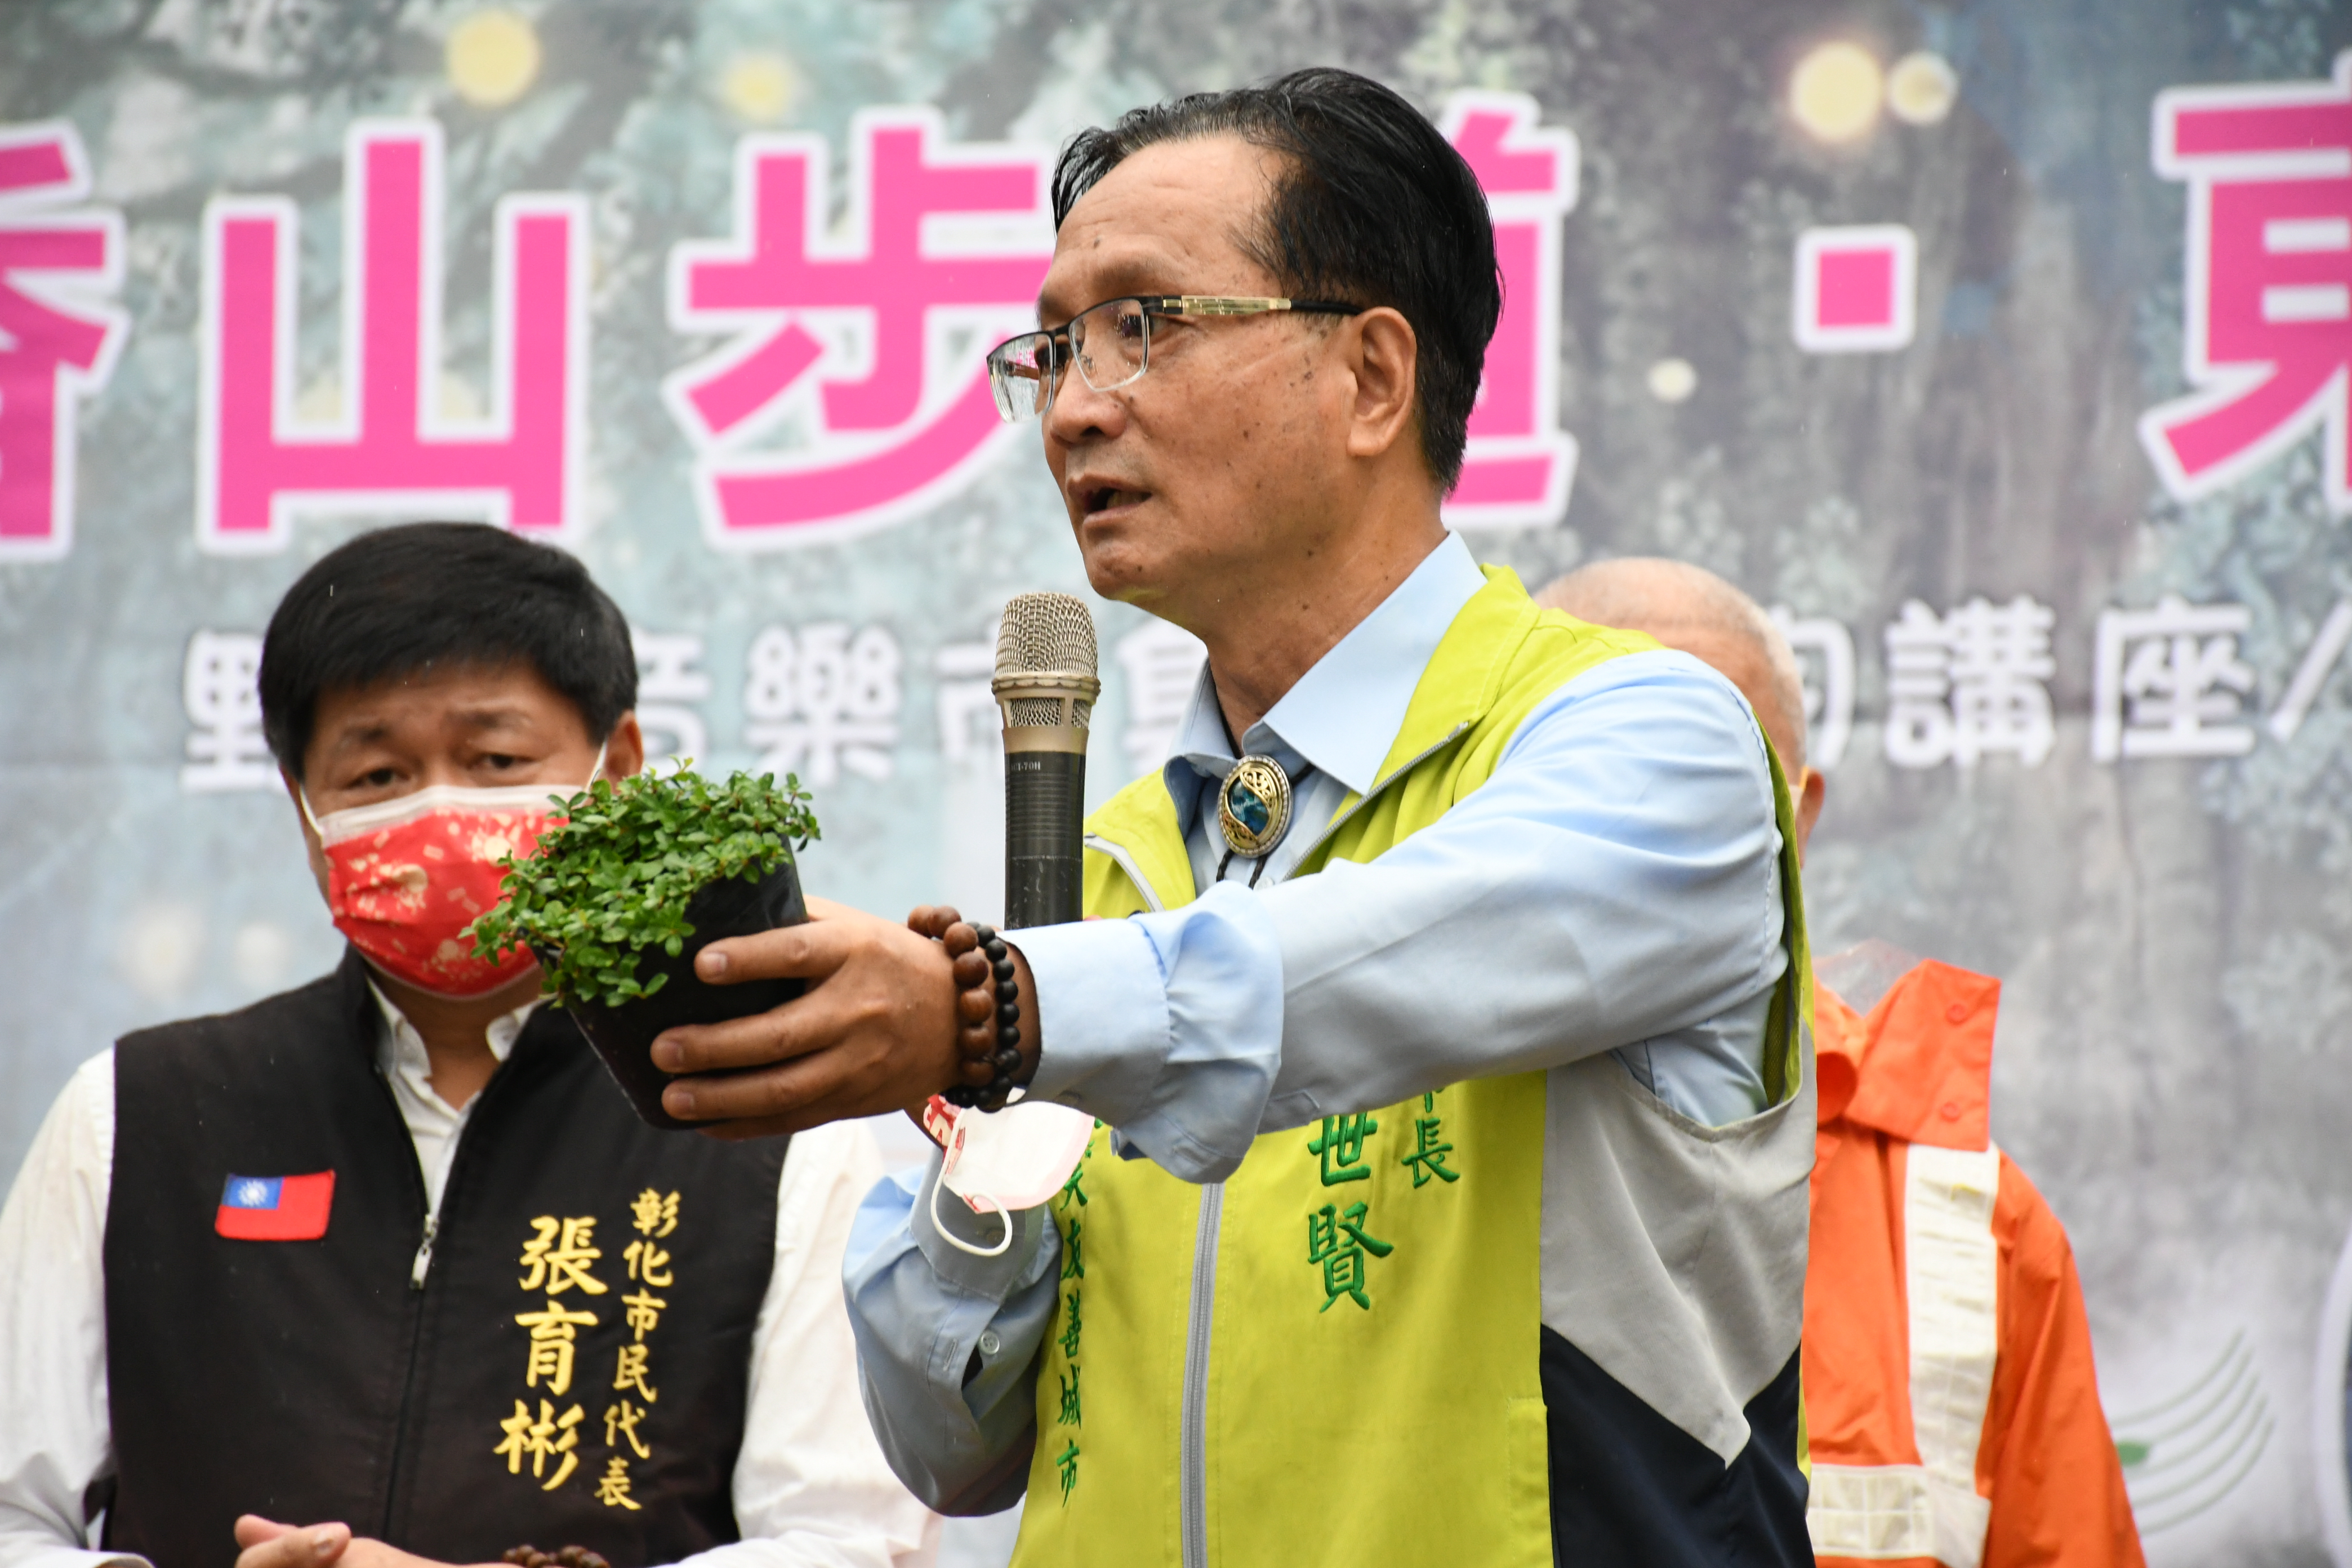 林世賢市長在綠享宴活動進行生態植物解說介紹「越橘葉蔓榕」植栽